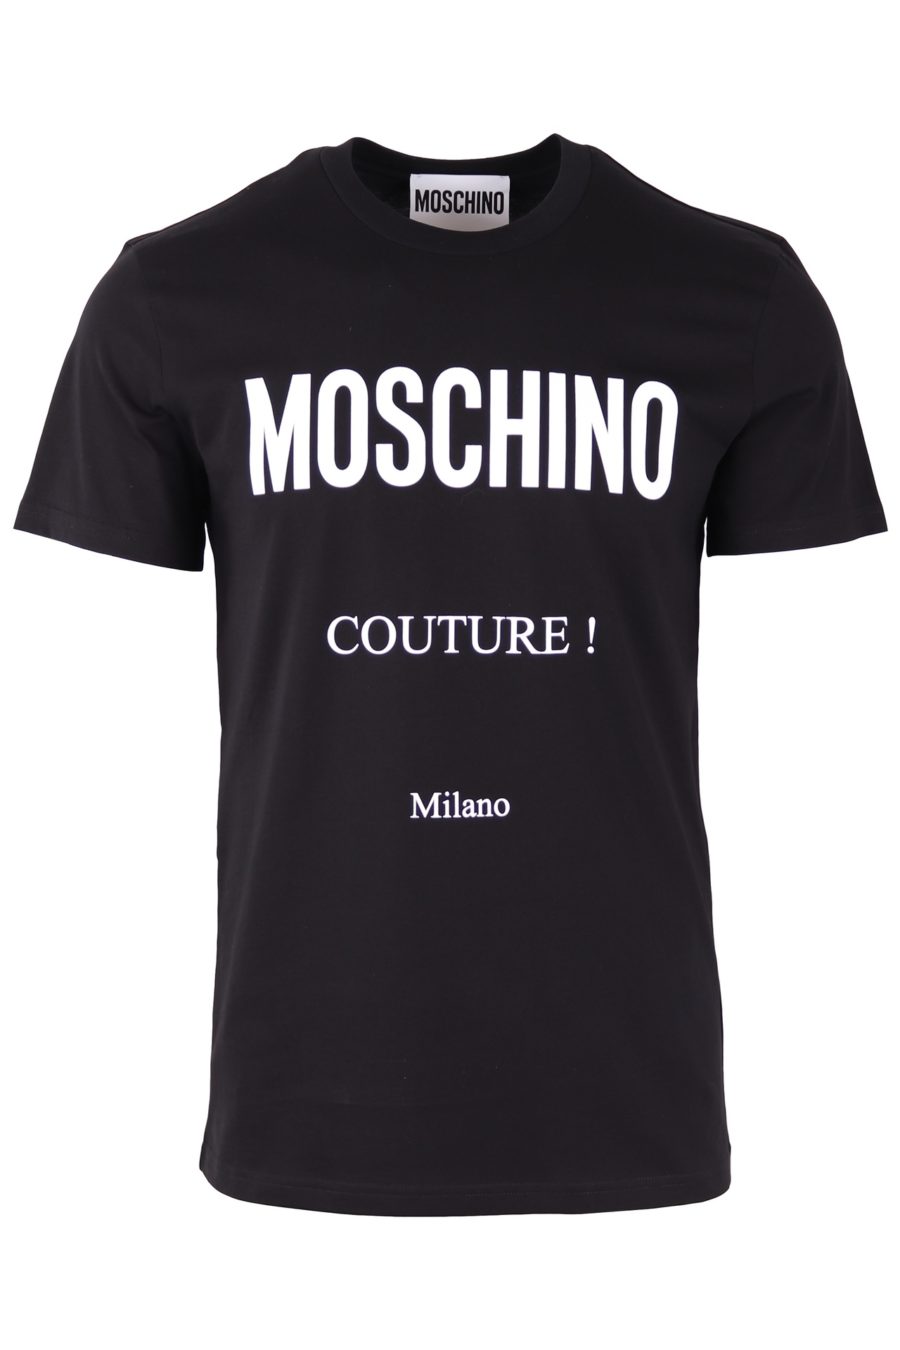 Moschino Couture Milano schwarzes T-Shirt mit weißem Logo - de6a9afcb66a3de959dc7514b18fe37bbf5e4108